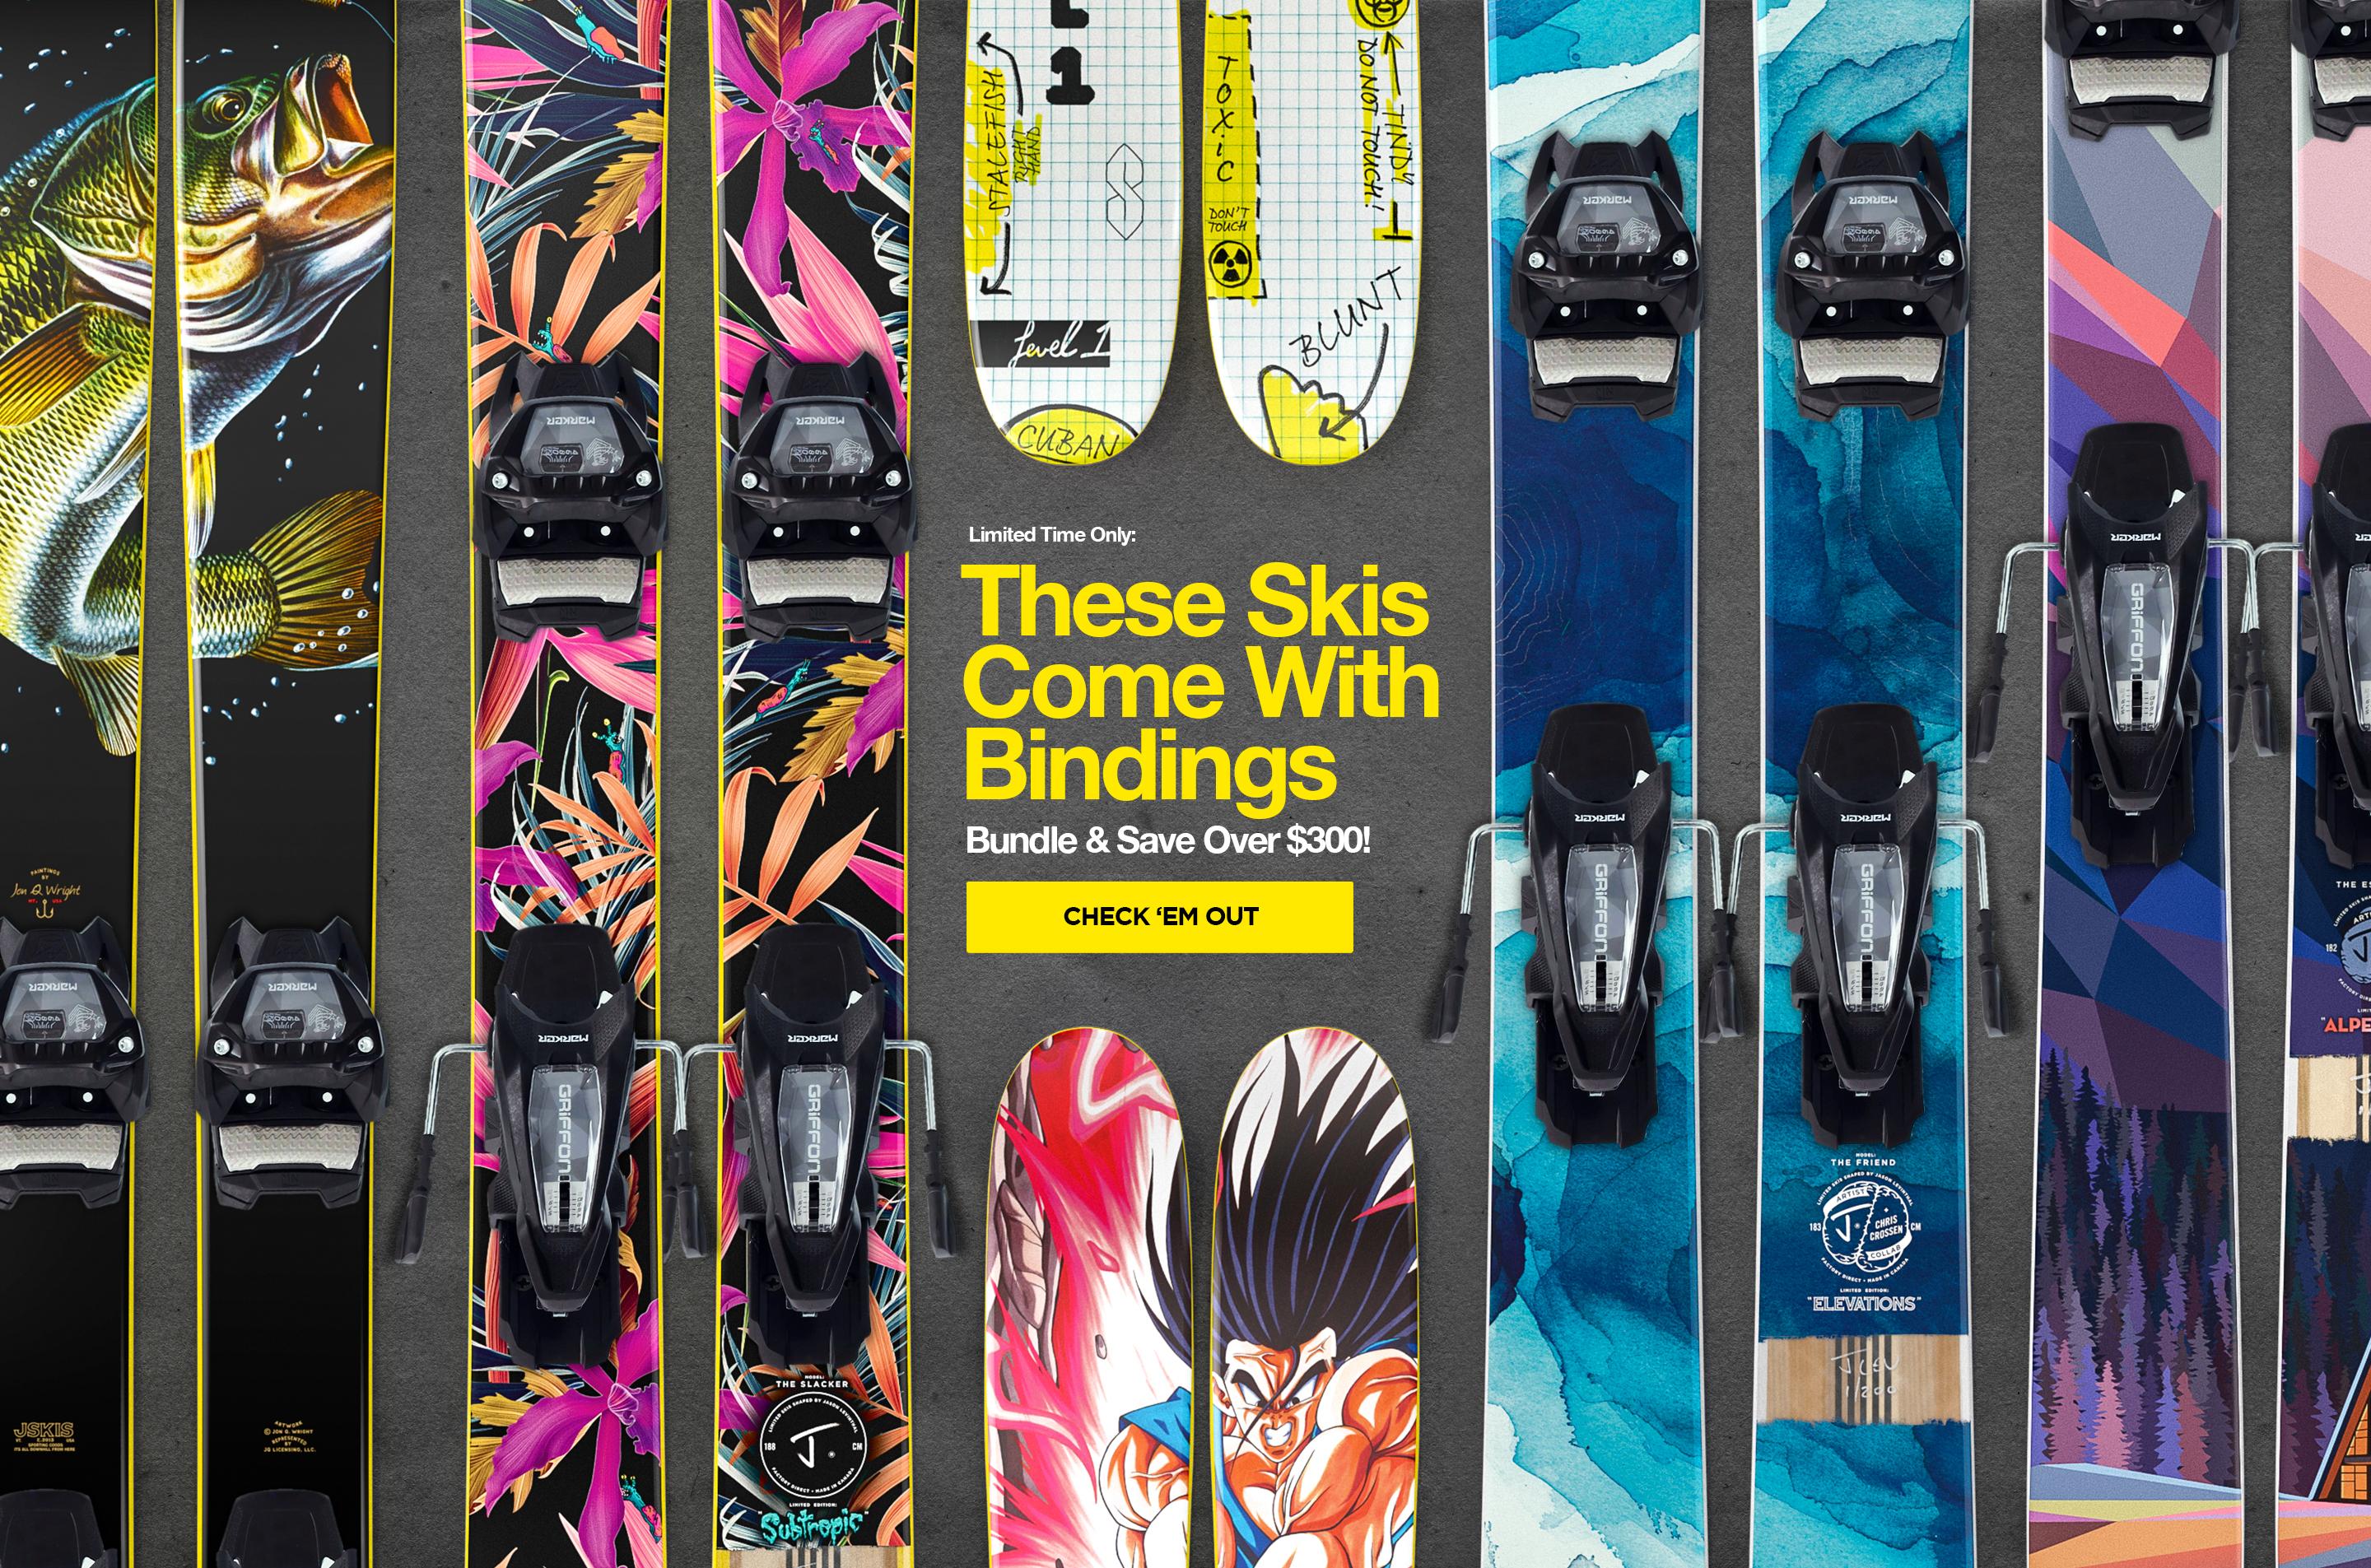 bundle skis and bindings to save over $300!